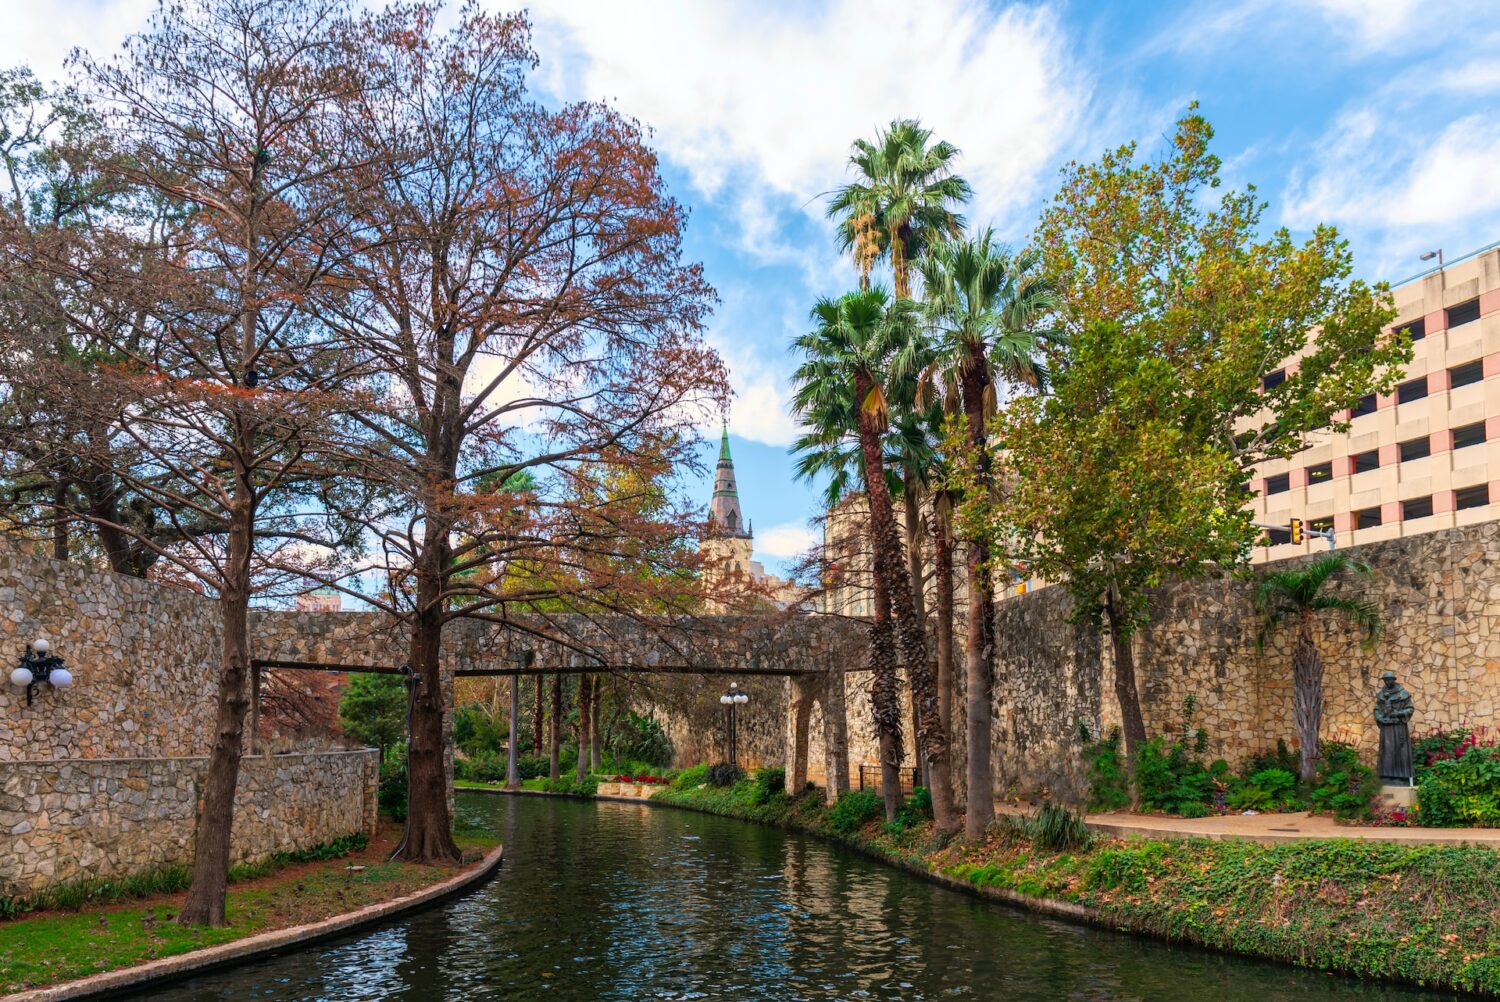 Um amplo canal com árvores nos arredores e uma ponte de pedra passando por cima das águas, para representar San Antonio (Texas)